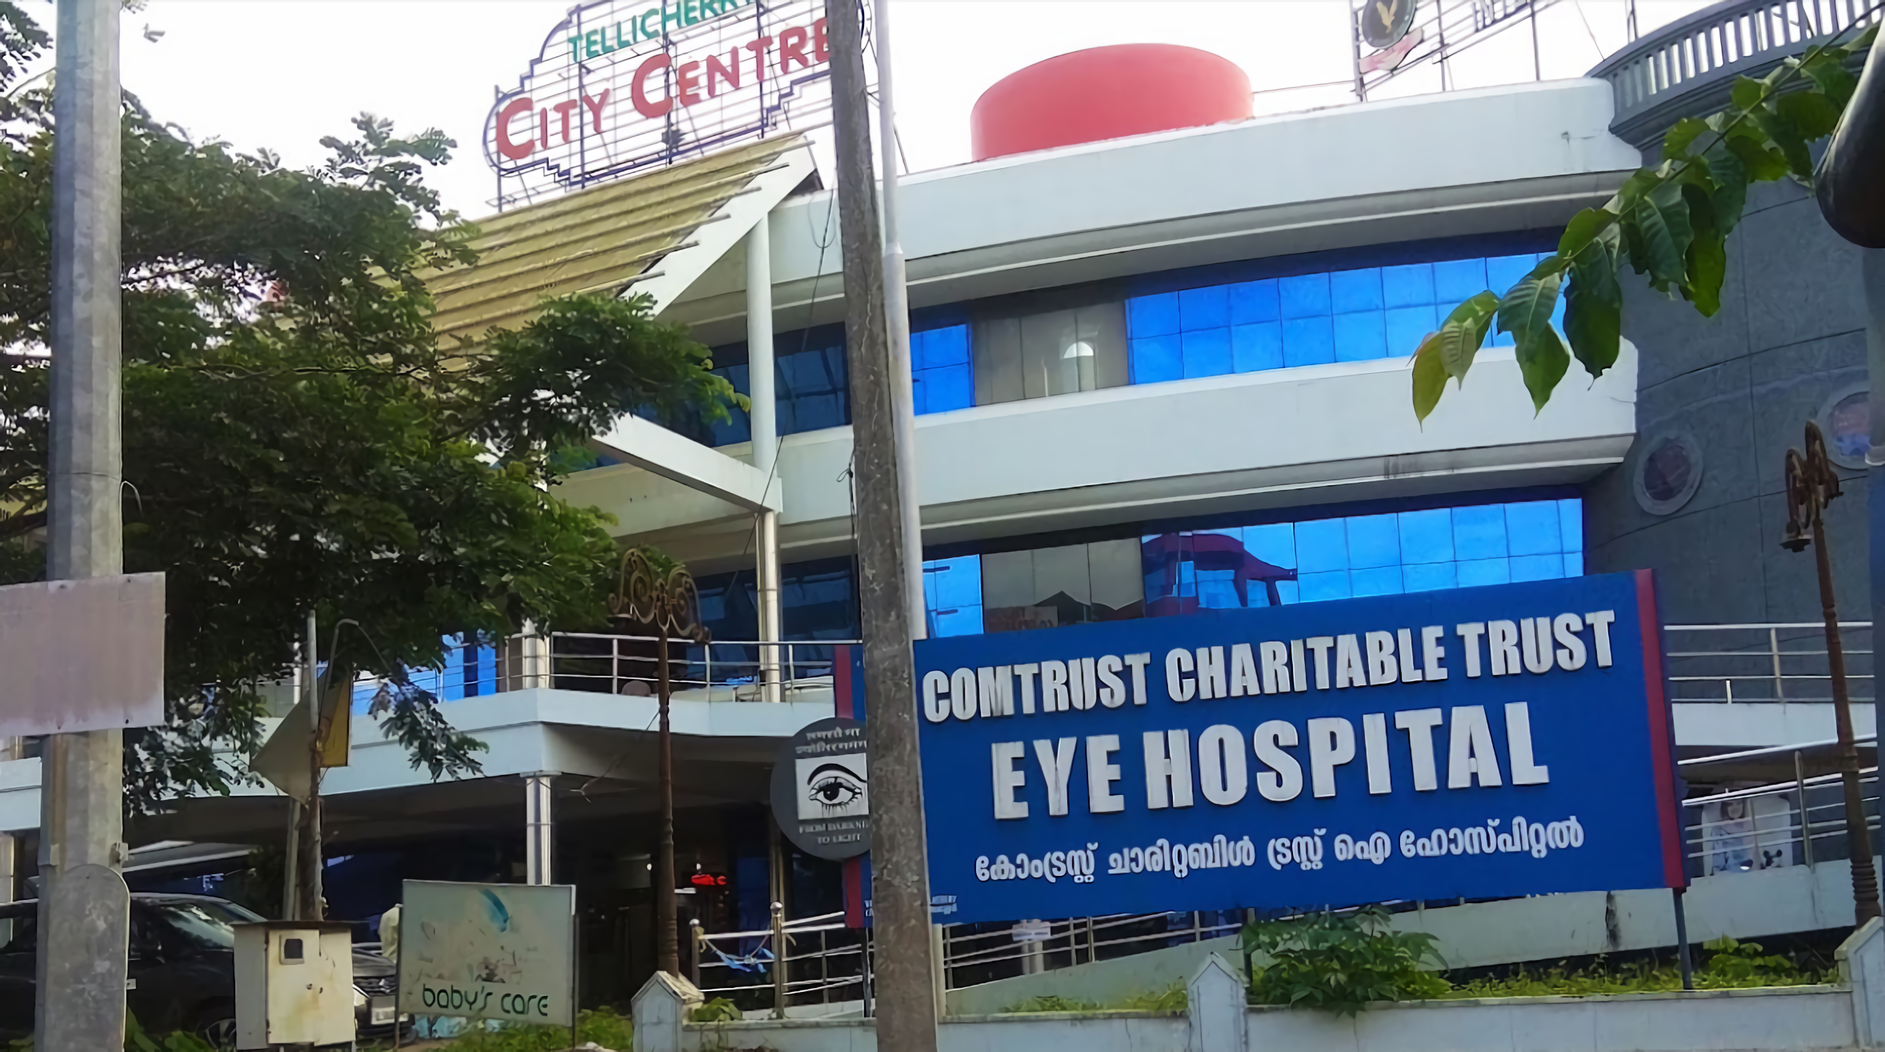 Comtrust Cheritable Eye Care Hospital